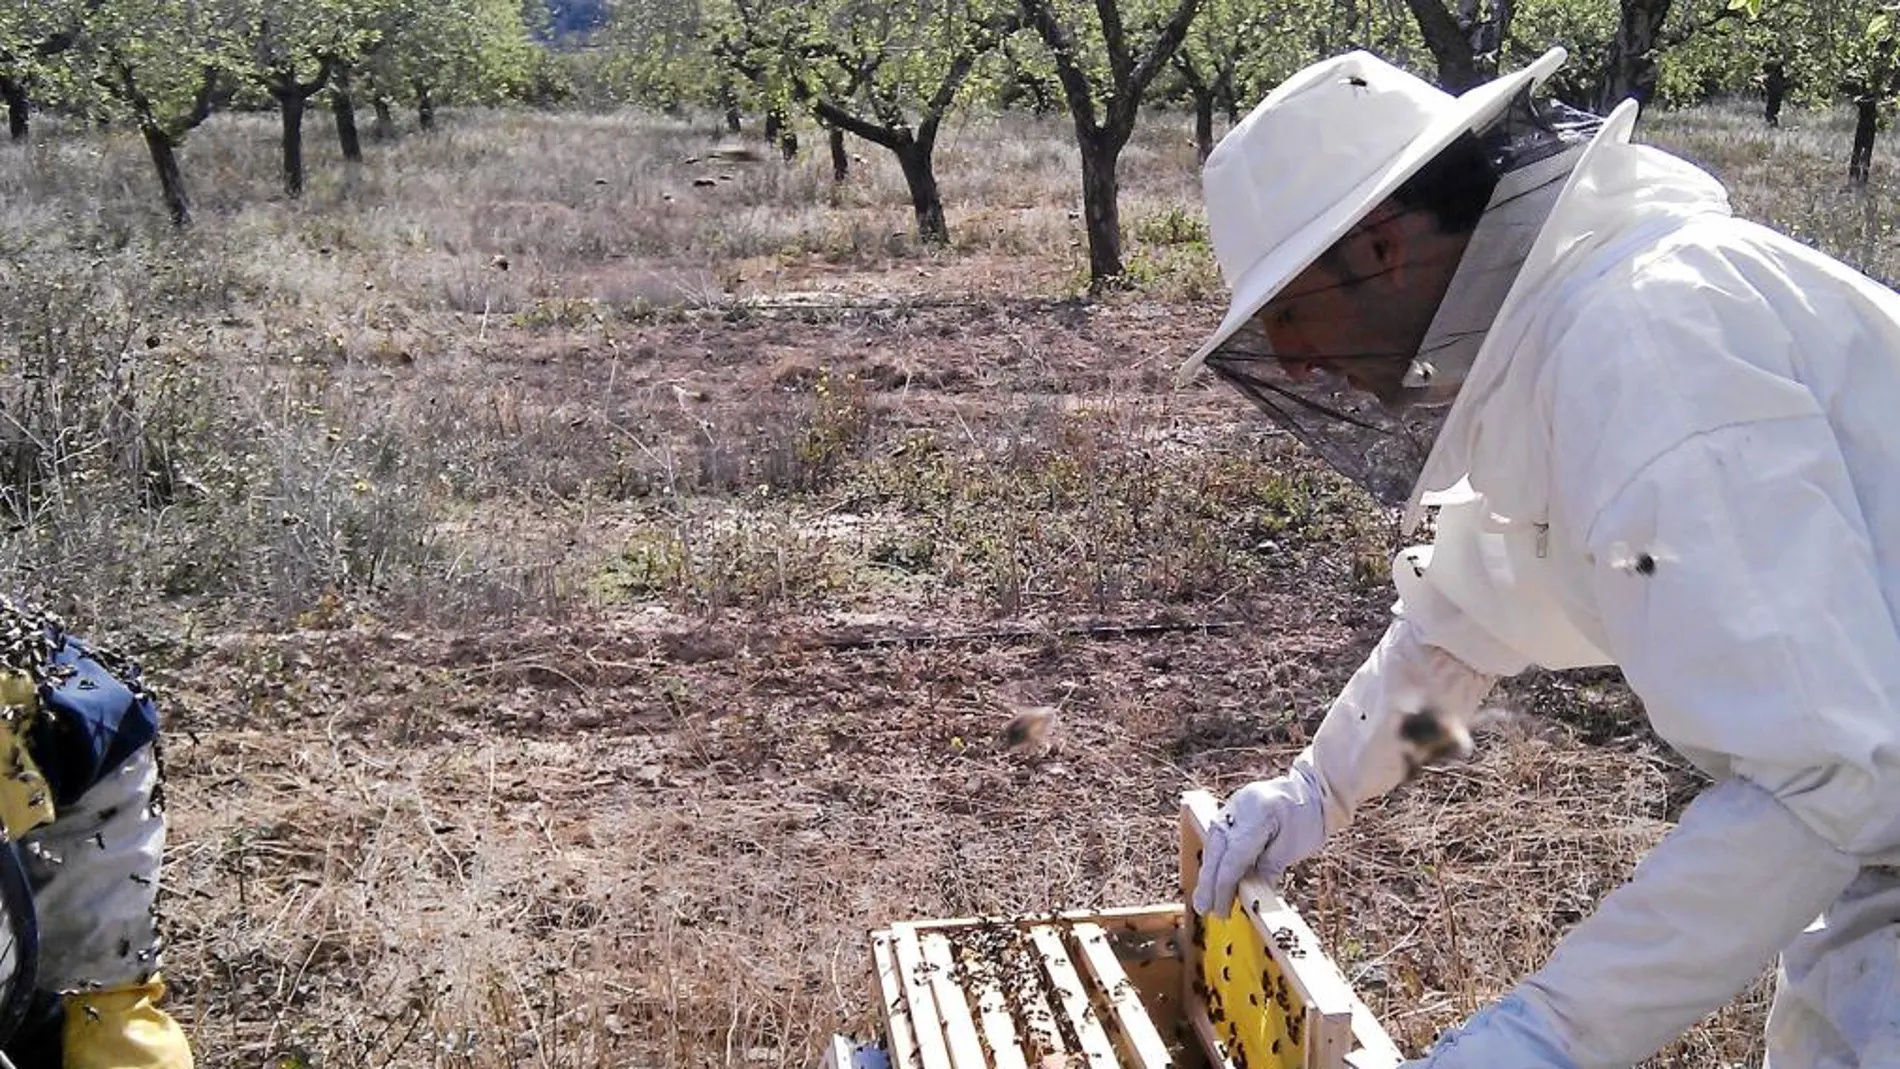 Apicultores alertan de la creciente muerte de abejas por insecticidas